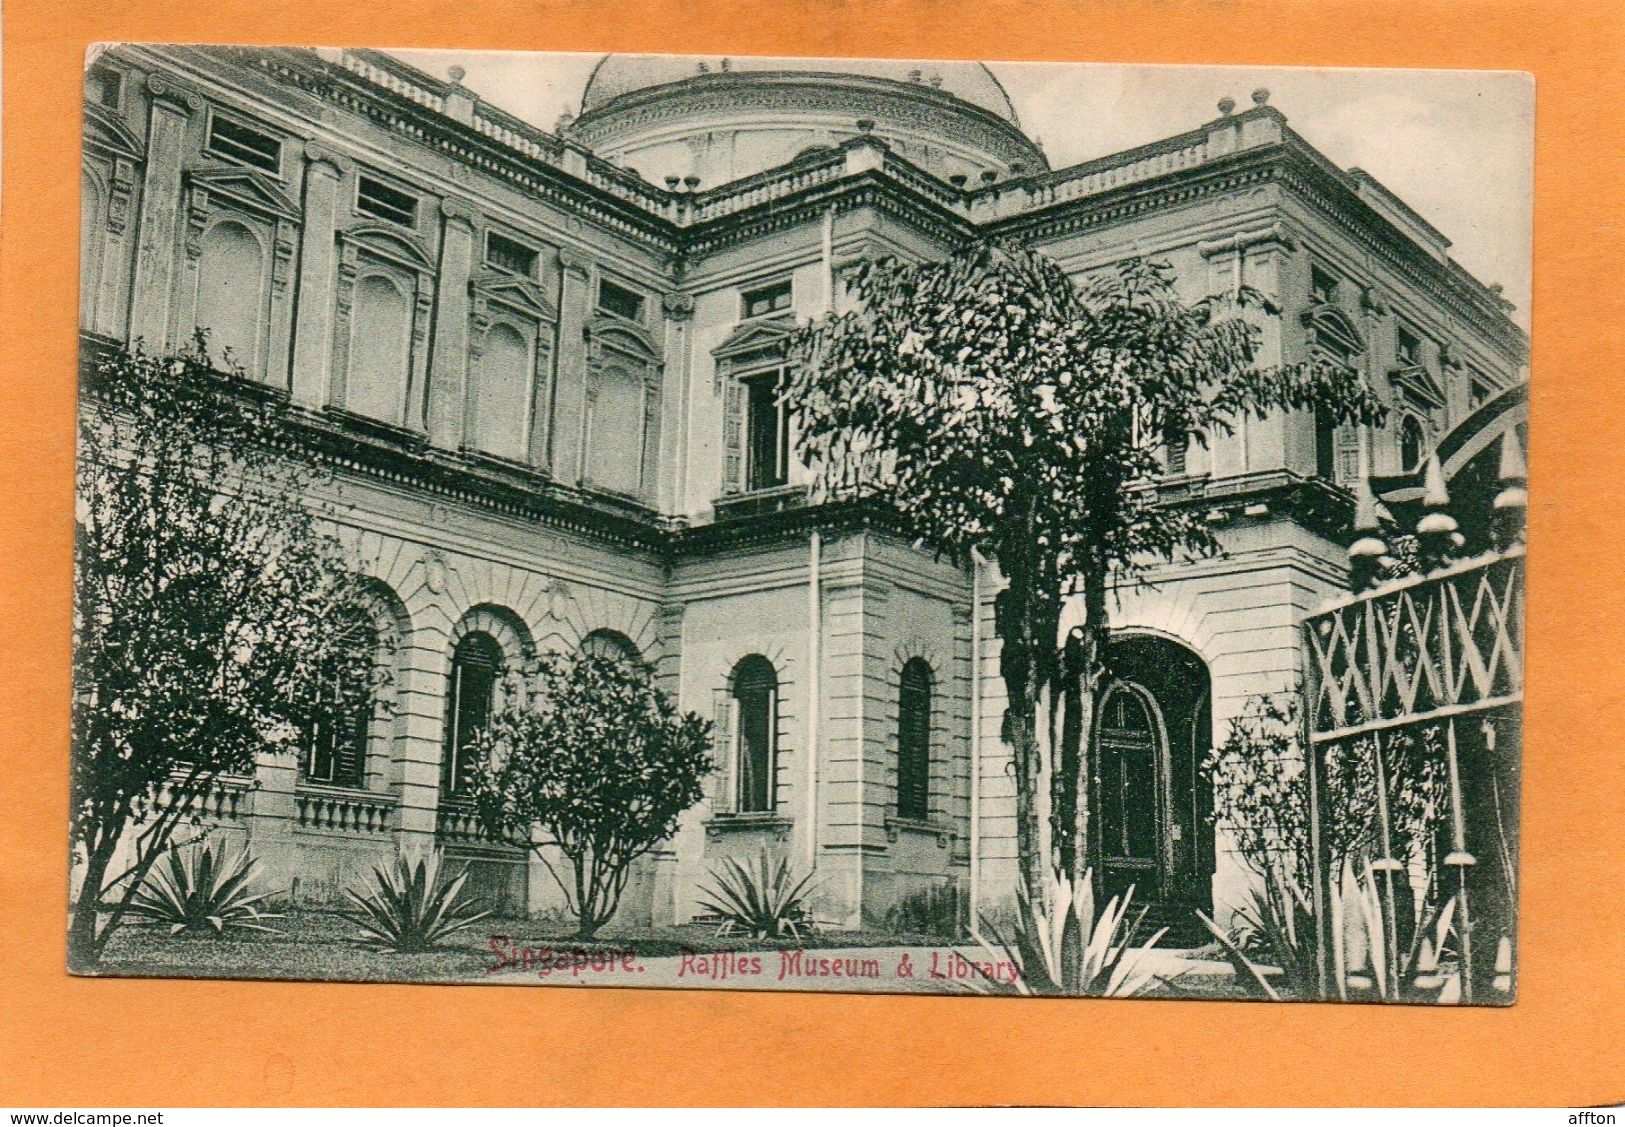 Singapore 1905 Postcard - Singapore